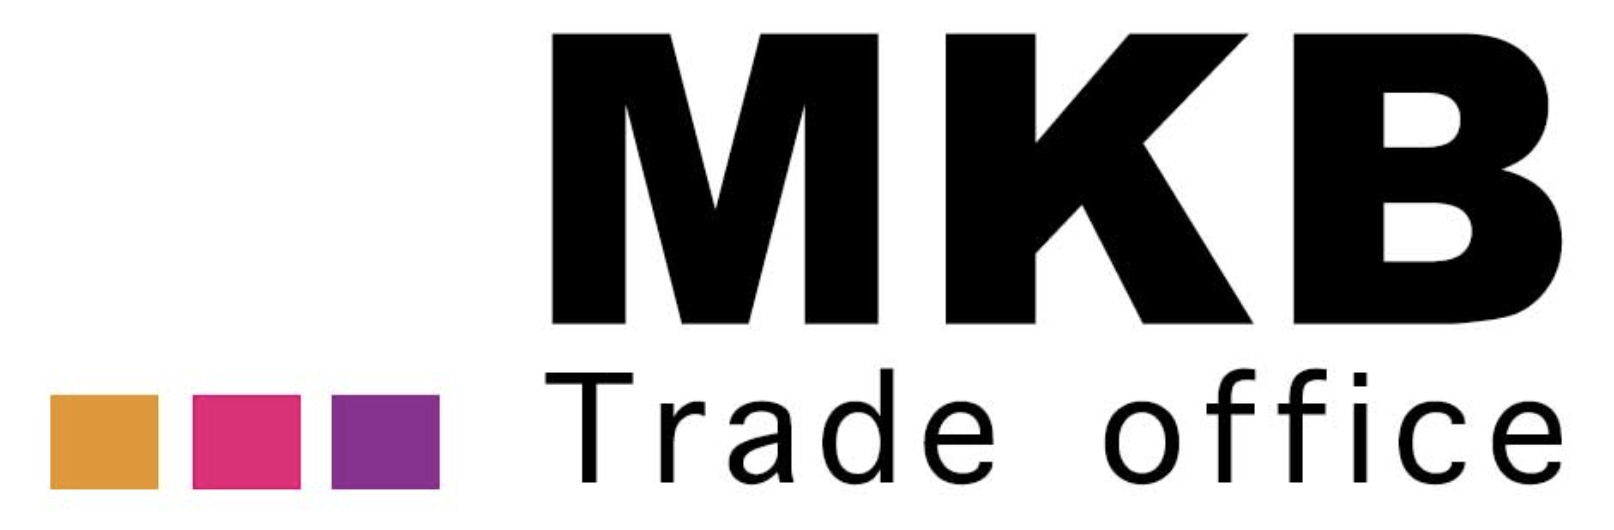 MKB_Trade_office